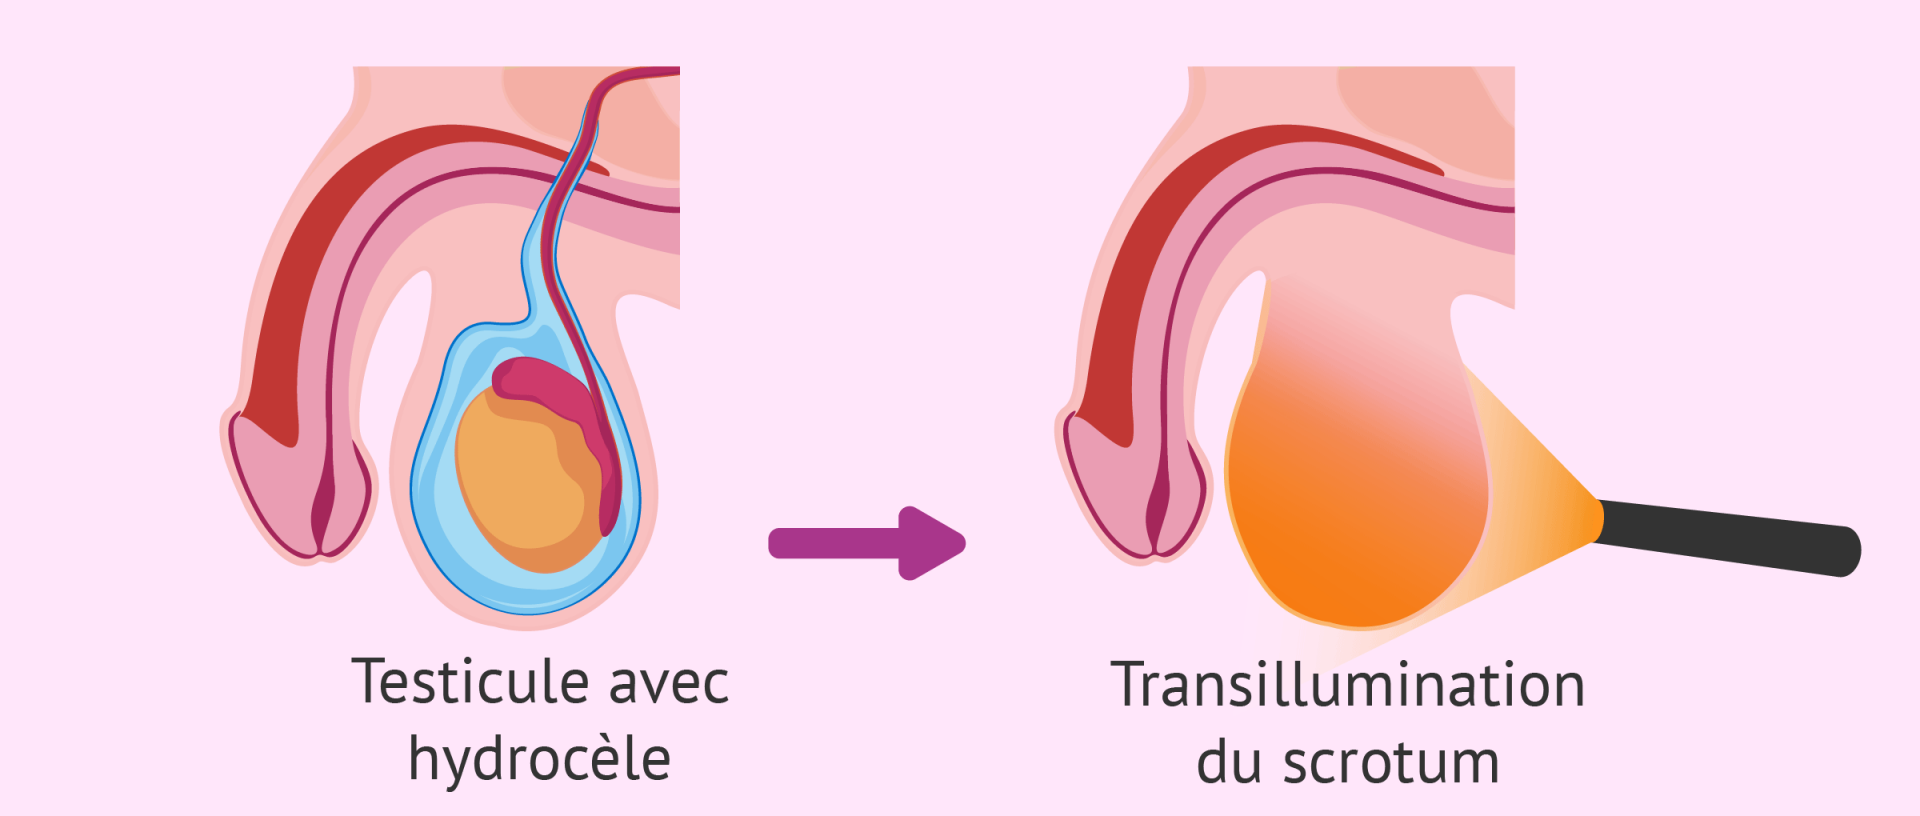 Hydrocele testiculaire transillumination du scrotum